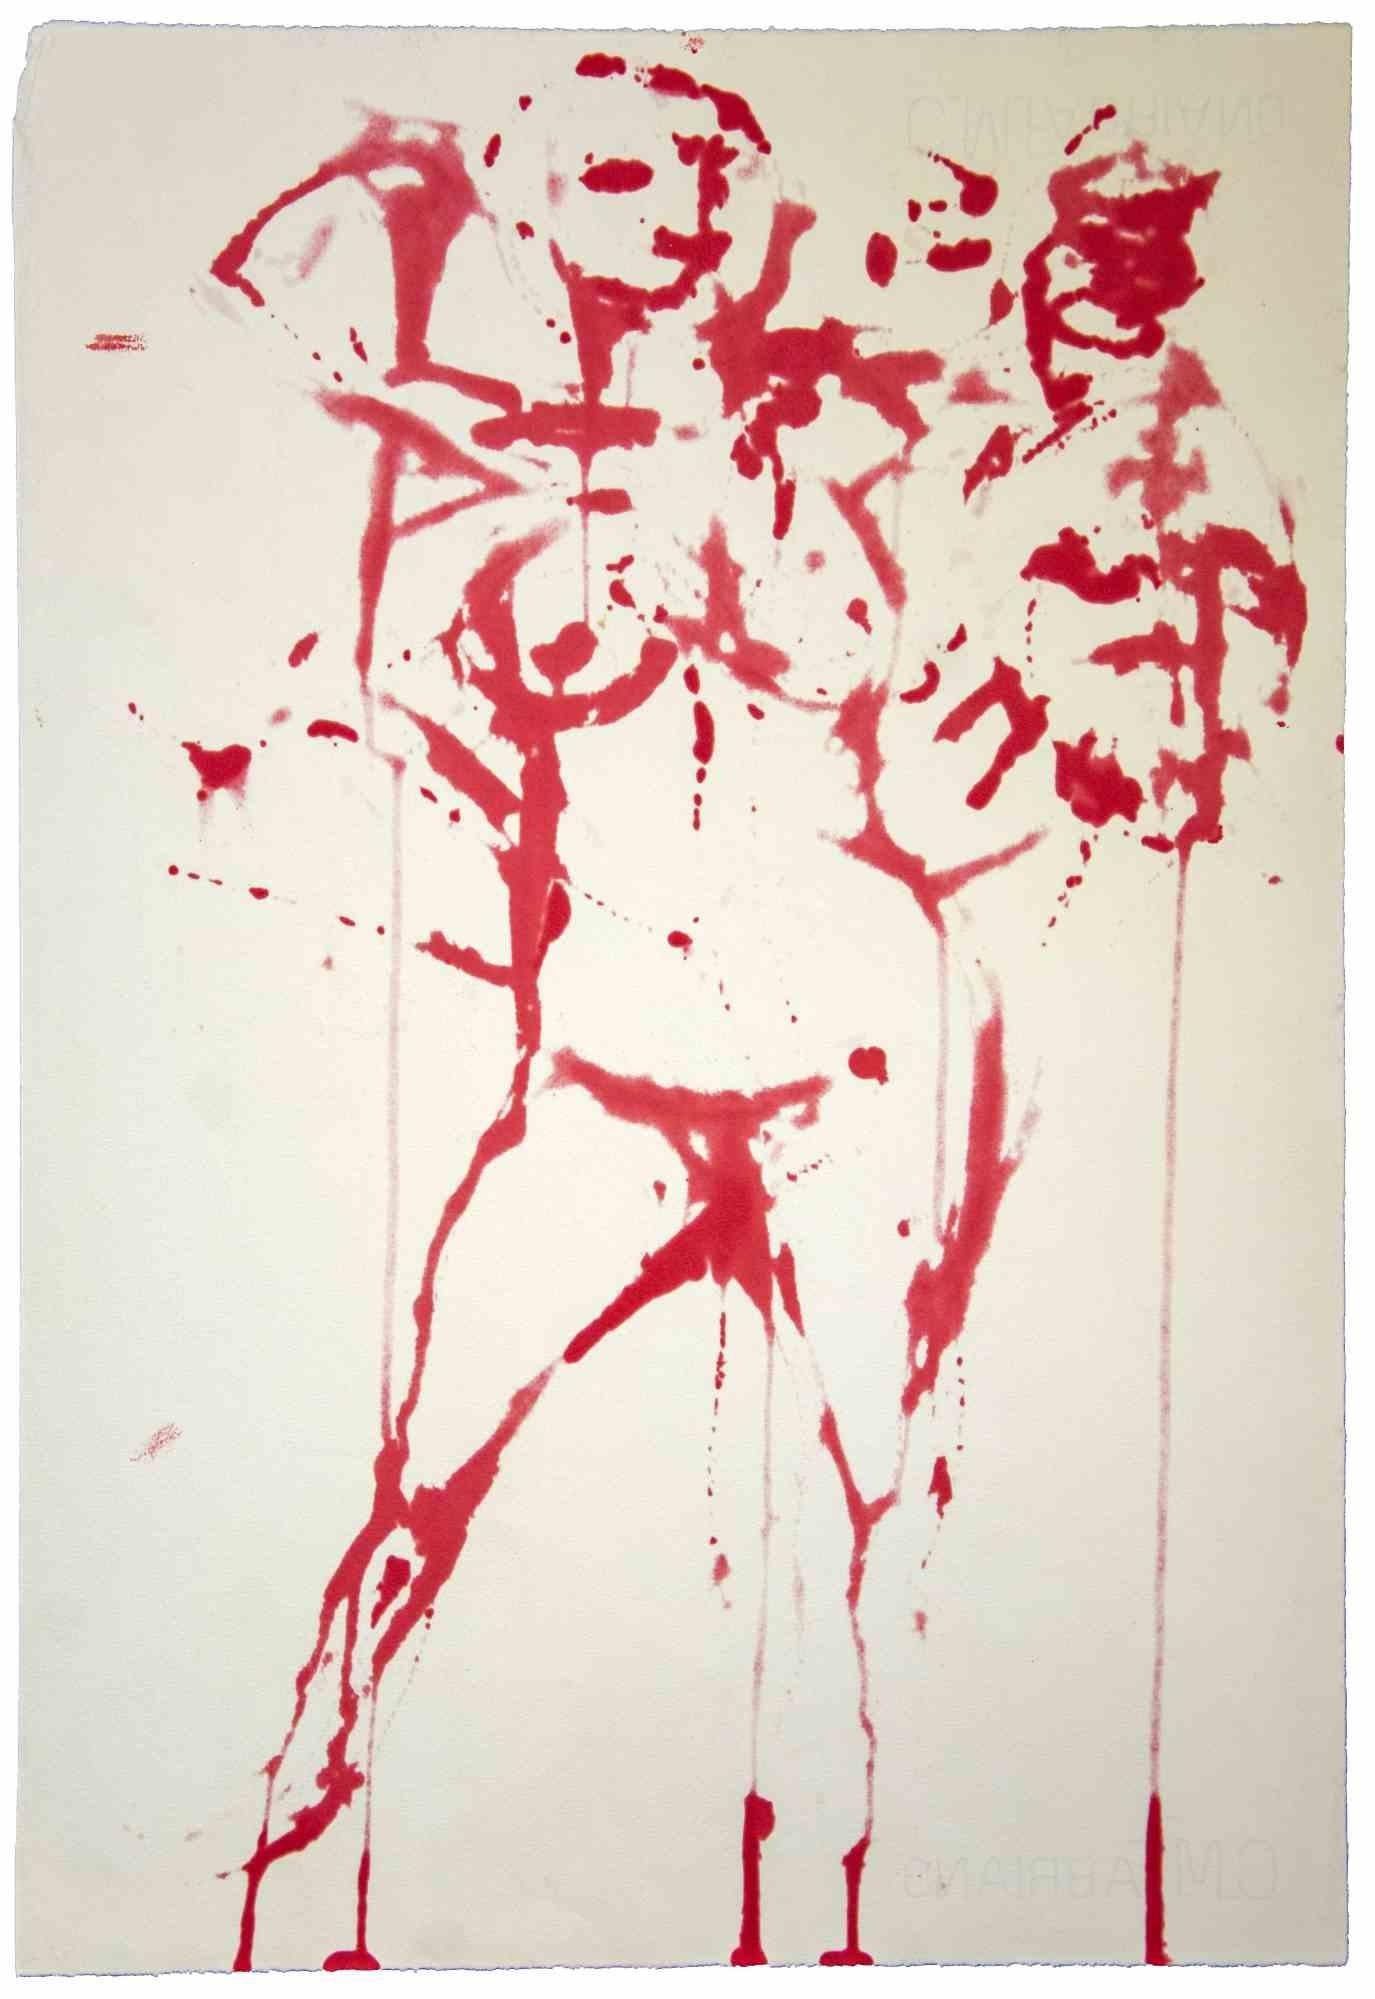 Figure ist ein Original-Kunstwerk, das in den 1970er Jahren von dem italienischen zeitgenössischen Künstler  Leo Guida  (1992 - 2017).

Originalzeichnungen in Aquarell auf Papier.

Guter Zustand, aber gealtert.

Das Kunstwerk wird durch kräftige